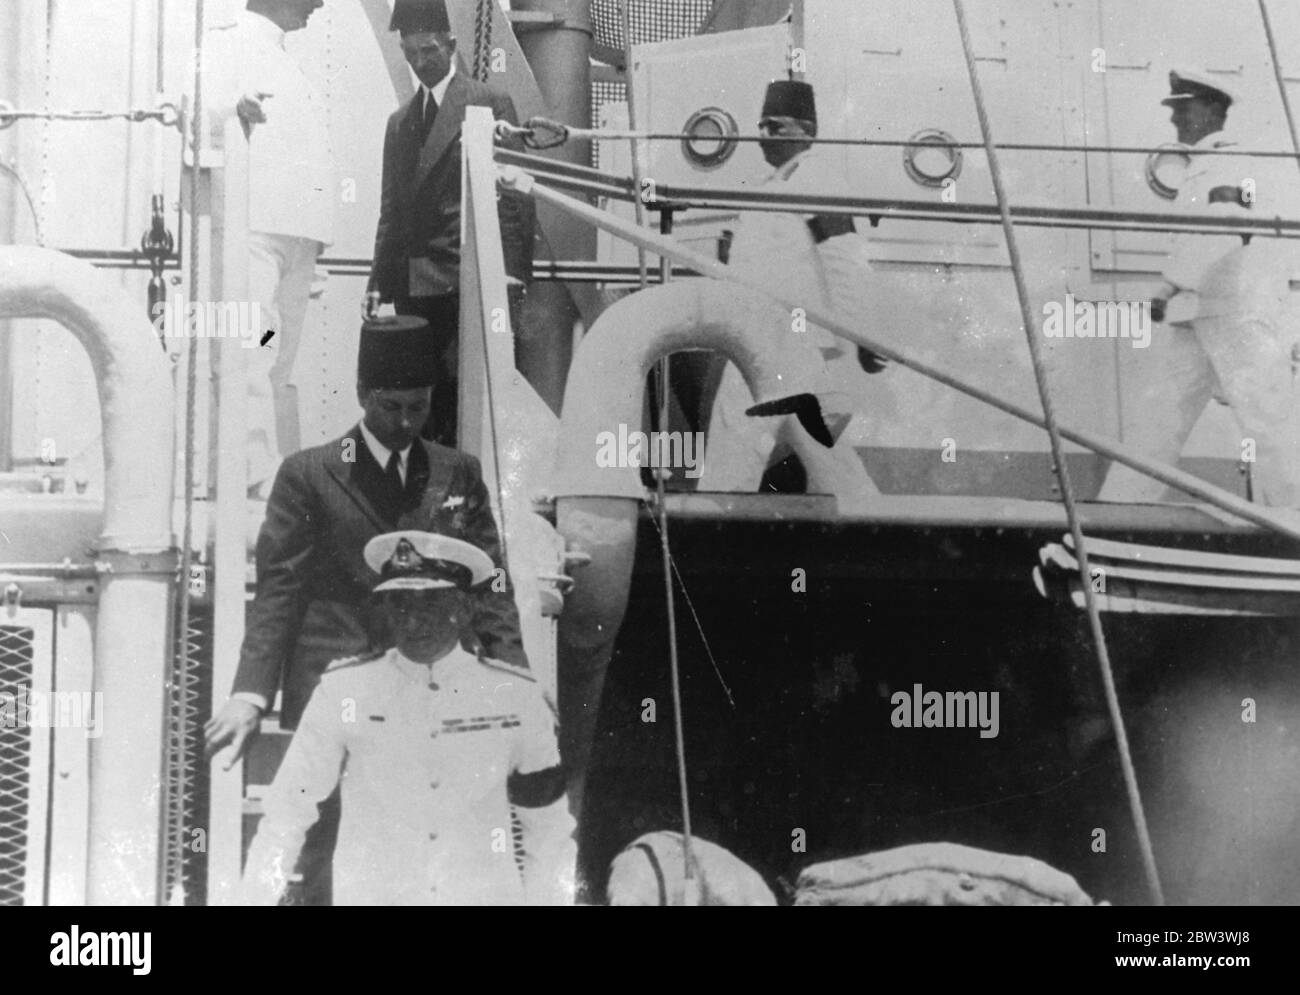 Le roi Farouk inspecte les navires de guerre de la flotte britannique à Alexandria . Le roi Farouk d'Égypte a regardé les navires de la flotte méditerranéenne de Grande-Bretagne passer en revue lorsqu'il a effectué une visite d'inspection à la reine Elizabeth , le navire amiral Sir Dudley Pound , à Alexandrie . Après la visite du roi Farouk, la flotte a quitté le port pour des manœuvres . Photos : le roi Farouk avec l'amiral Sir Dudley Pound à bord de la reine Elizabeth à Alexandrie . 28 juillet 1936 Banque D'Images